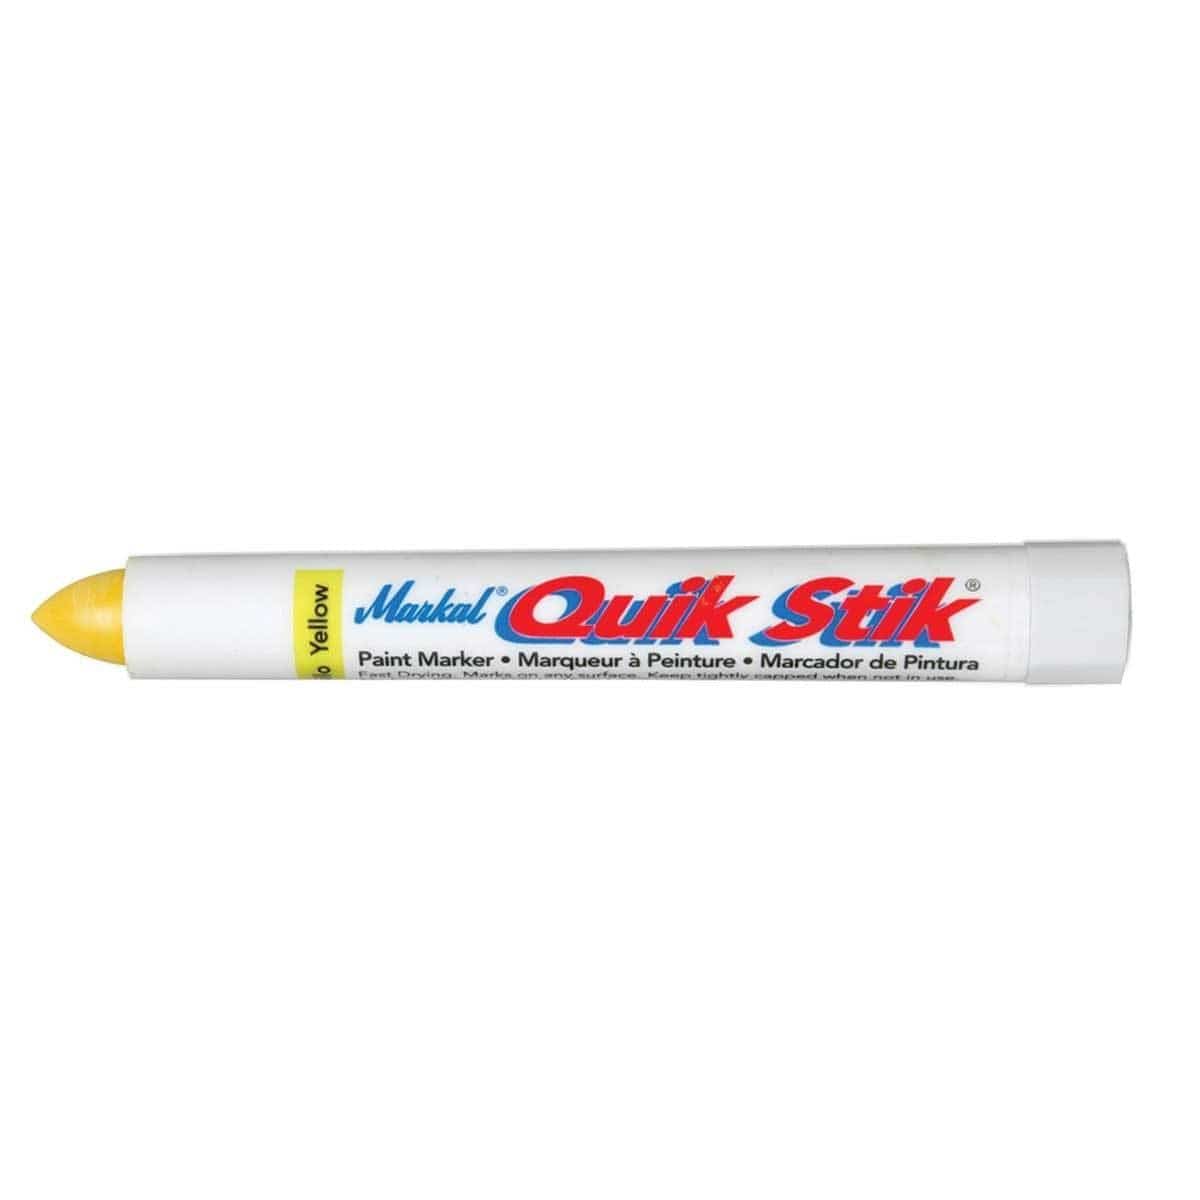 Quik Stik Paint Marker